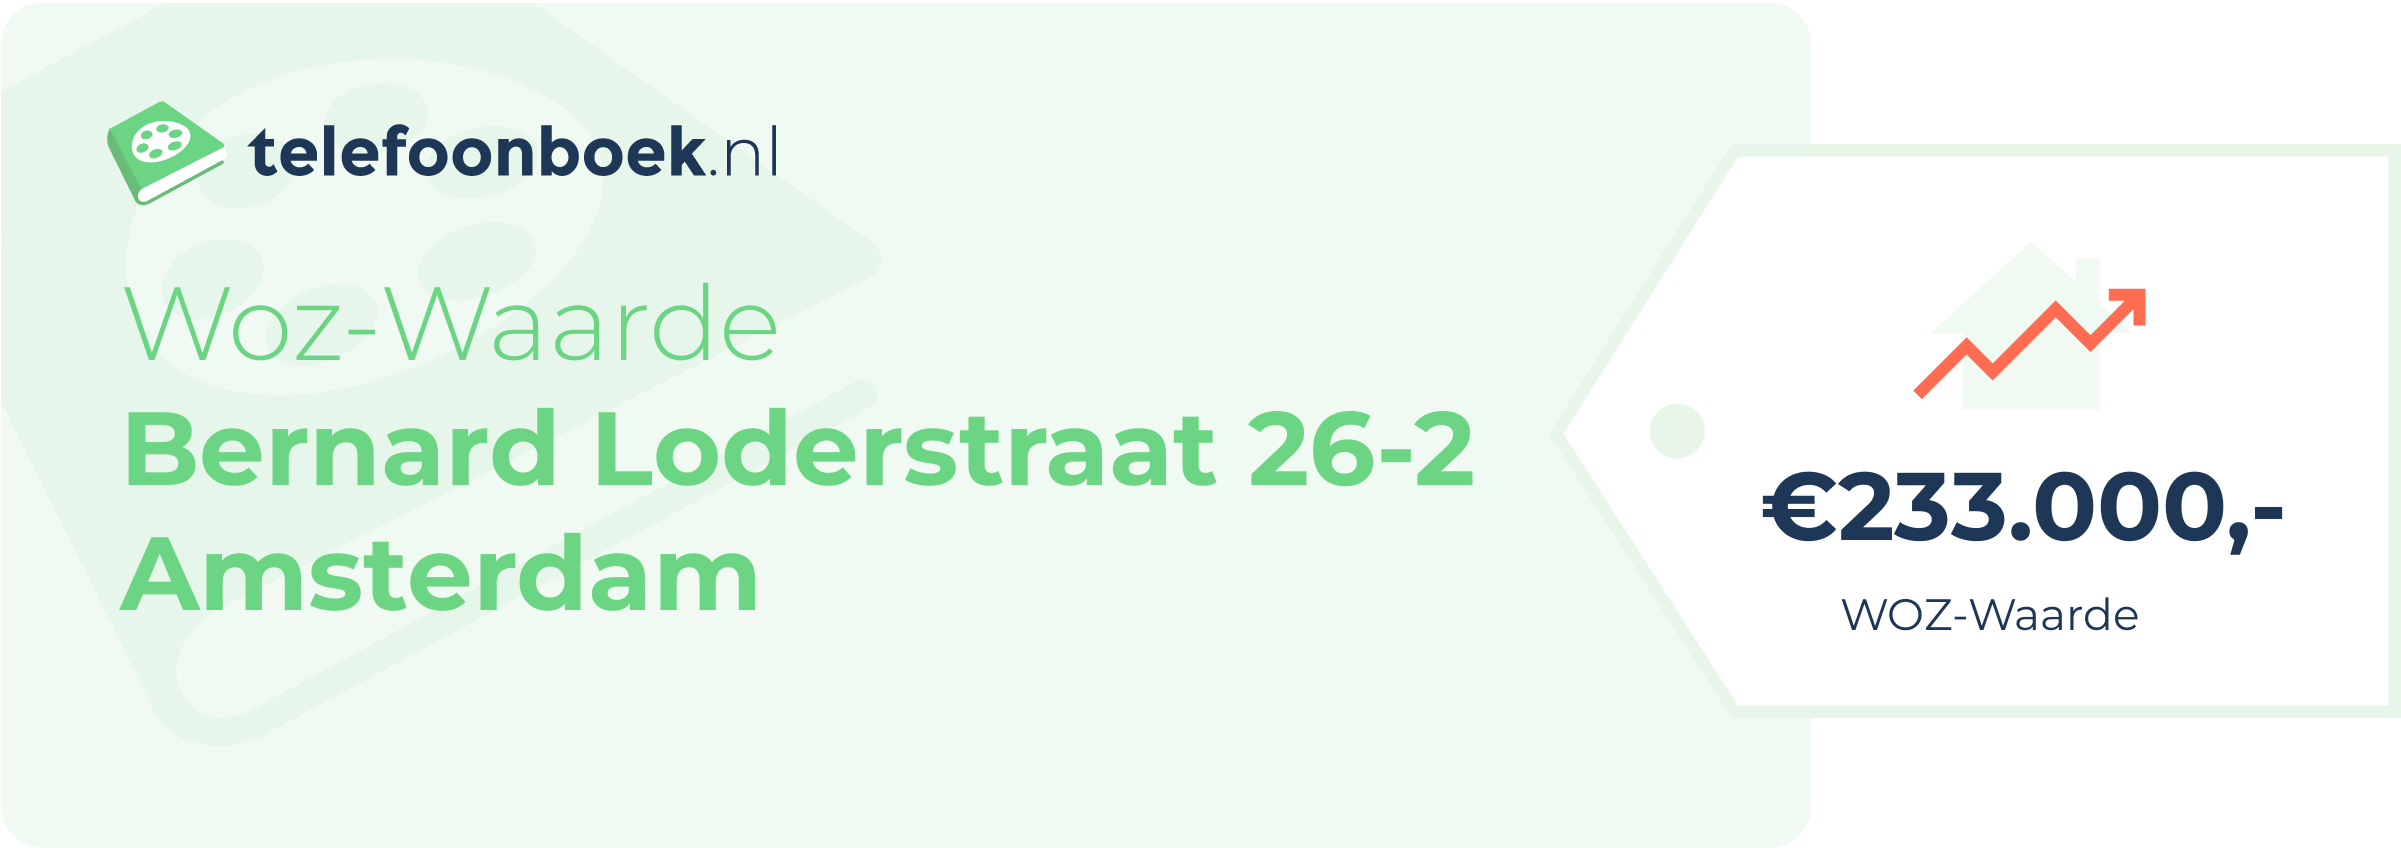 WOZ-waarde Bernard Loderstraat 26-2 Amsterdam